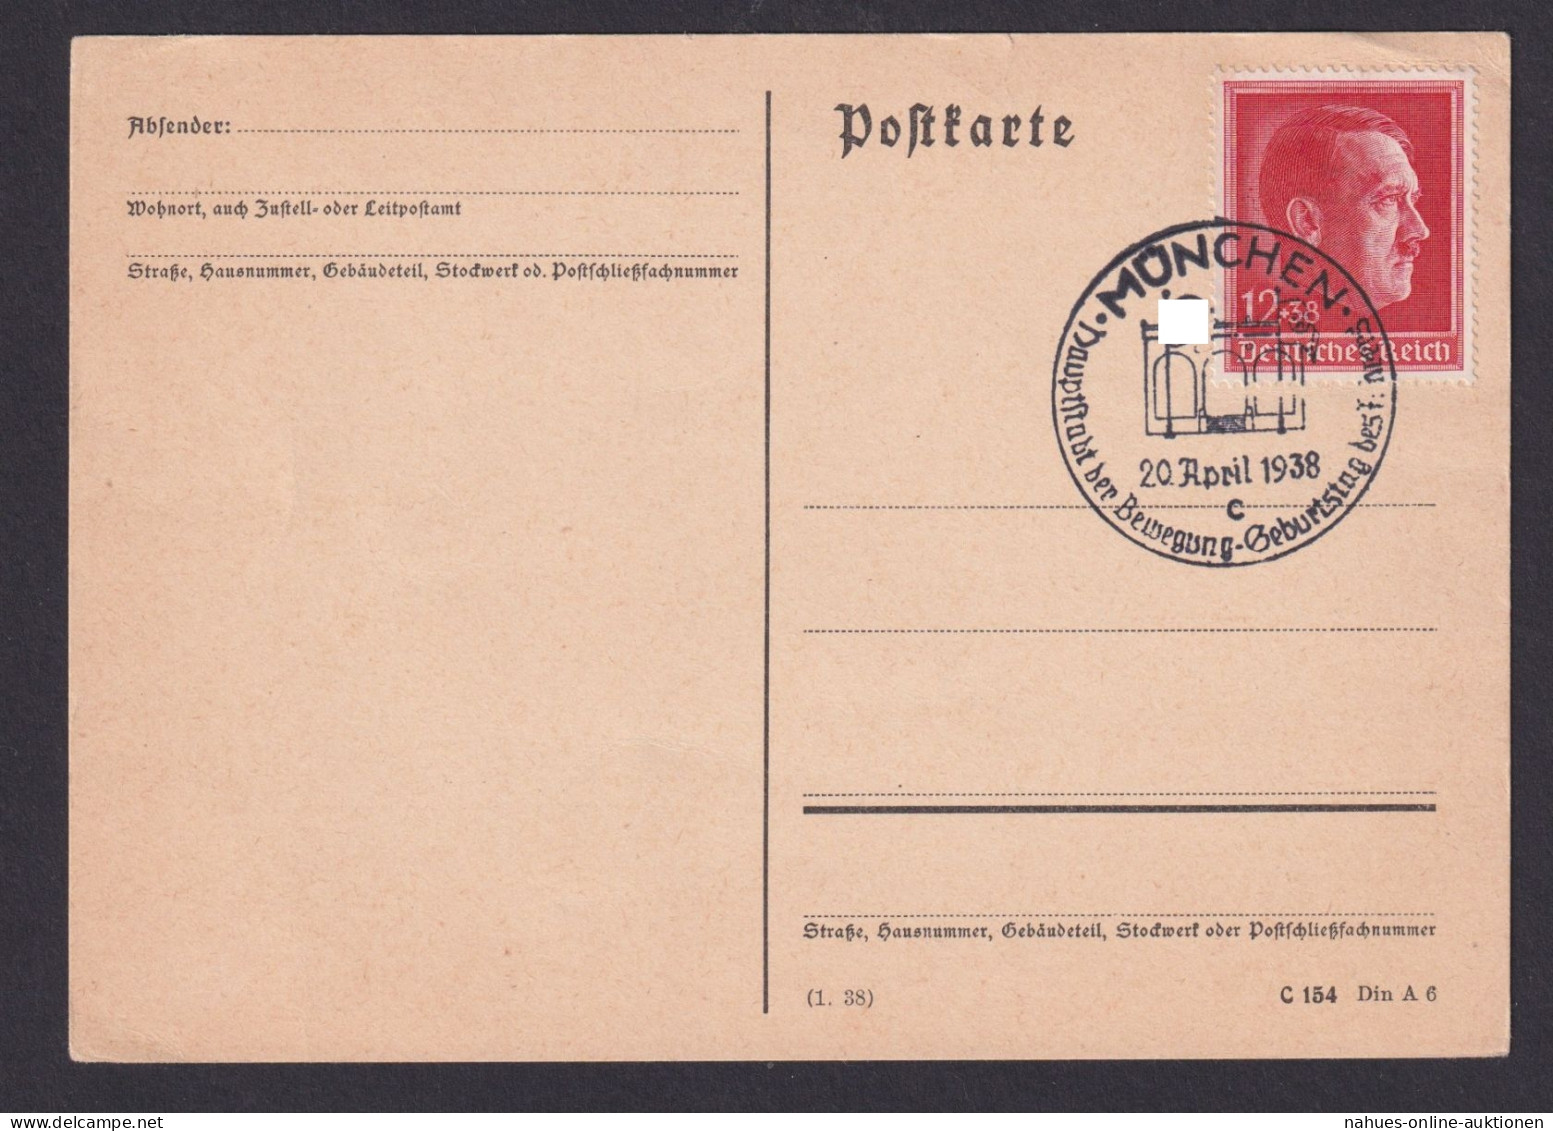 München Deutsches Reich Postkarte SSt Hauptstadt D. Bewegung Geburtstag - Covers & Documents